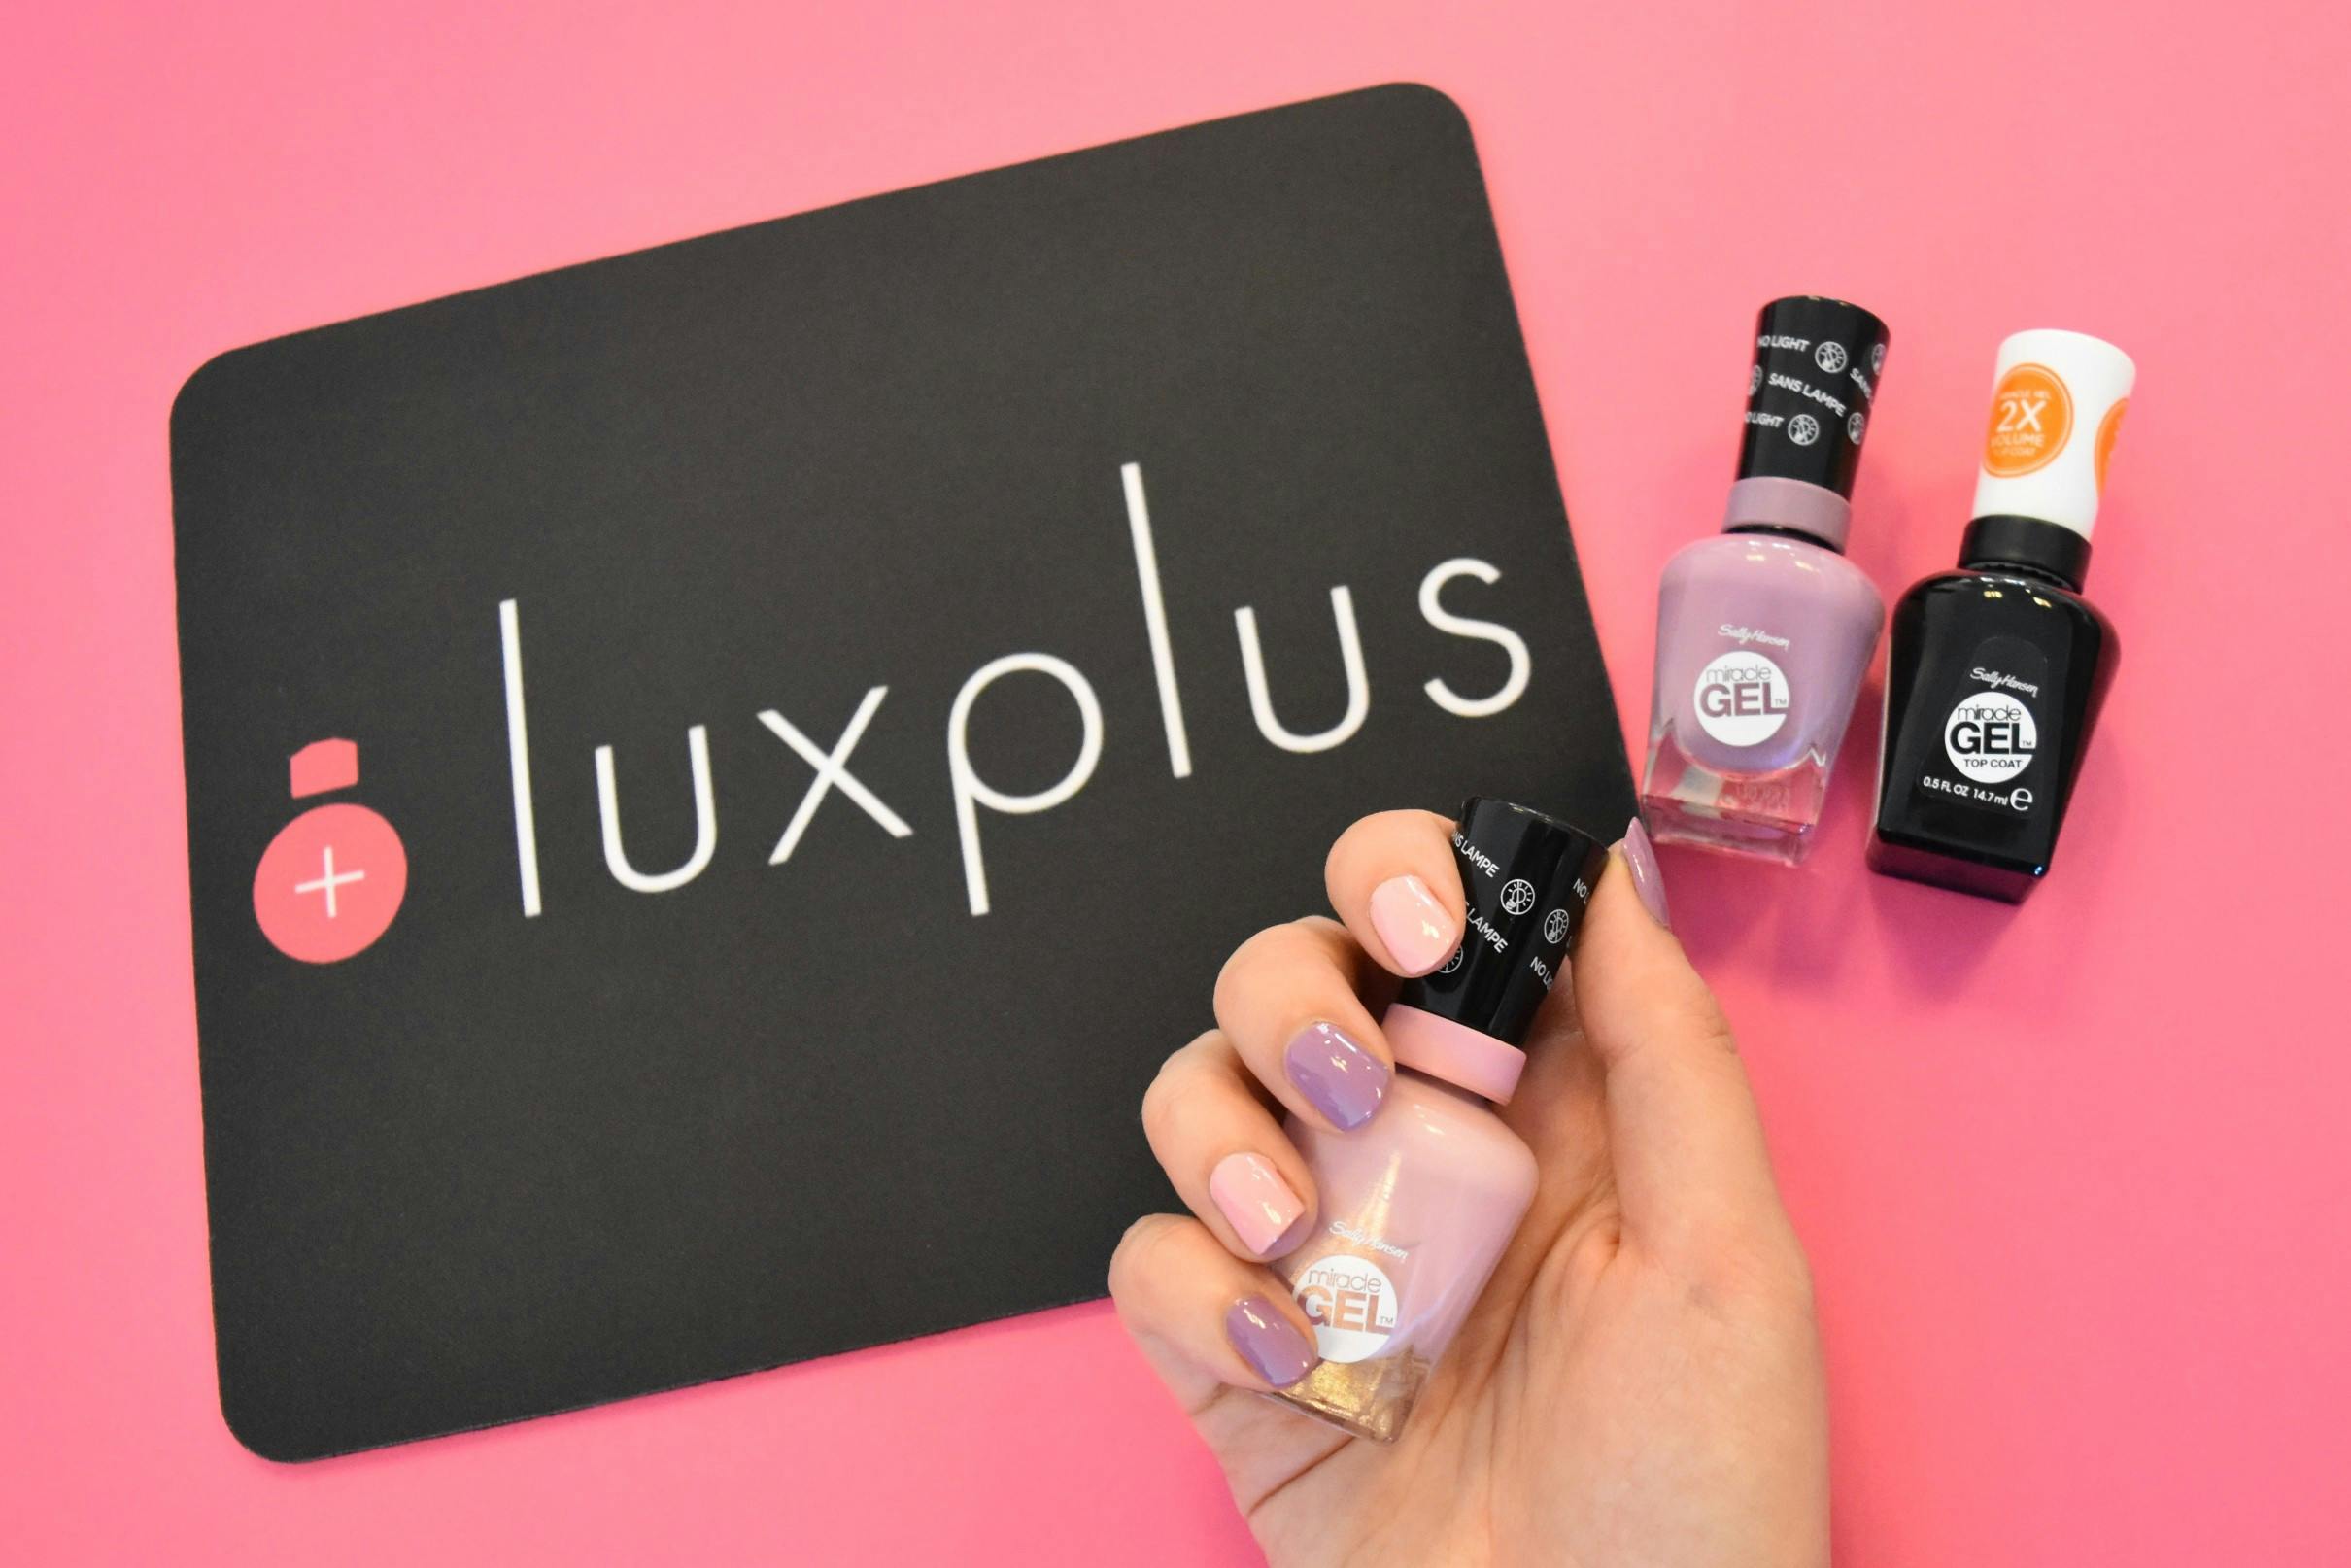 Billiga nagellack, gellack hemma och billiga Sally Hansen nagellack hos Luxplus